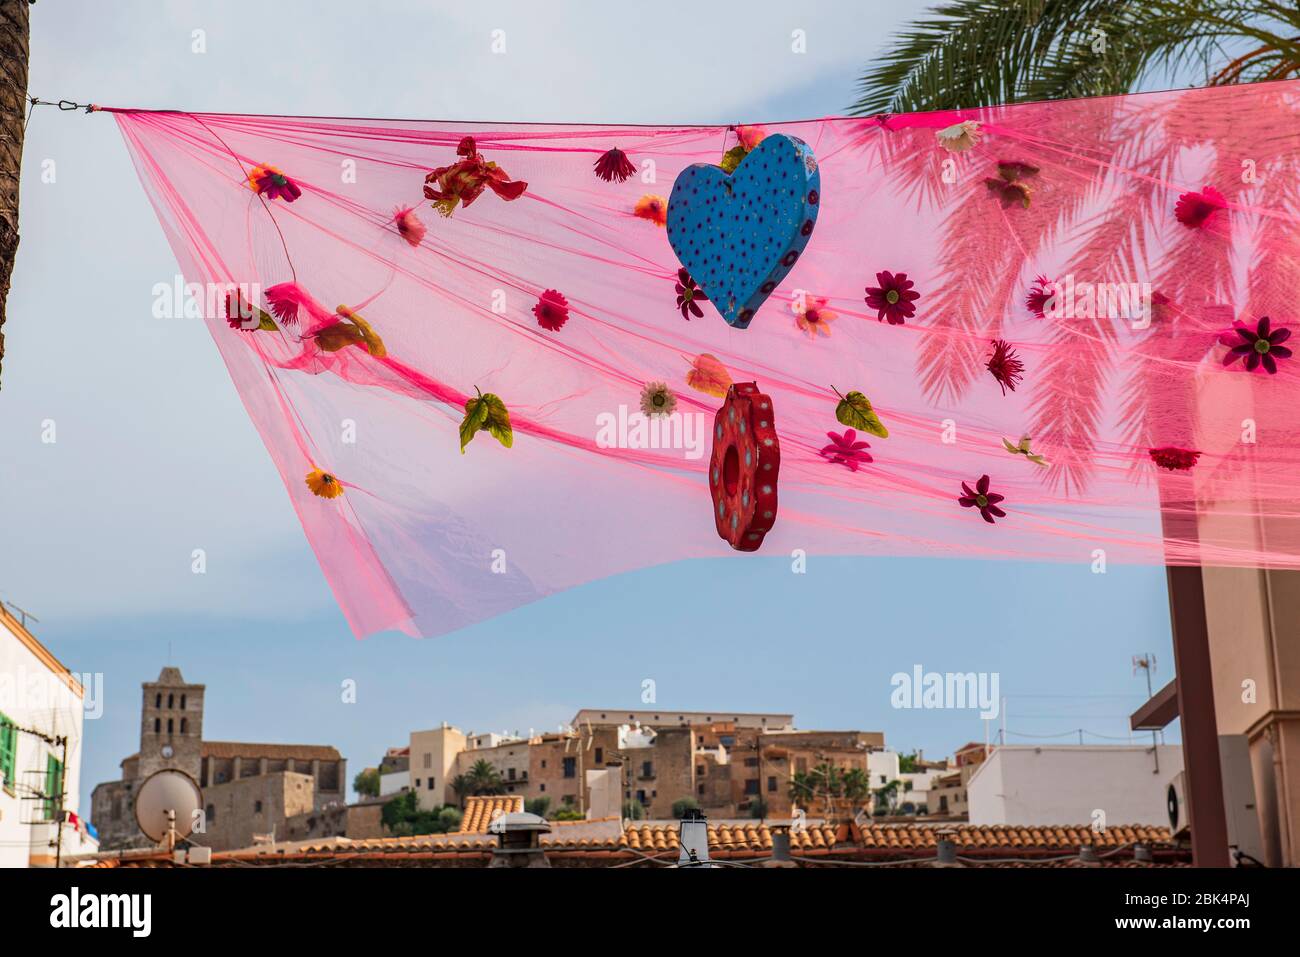 Ciudad vieja, puerto. Ibiza, Islas Baleares, Spain. Una bandera que indica un lugar de fiesta cerca del puerto de Ibiza. Ibiza es una isla de diversión. Foto de stock